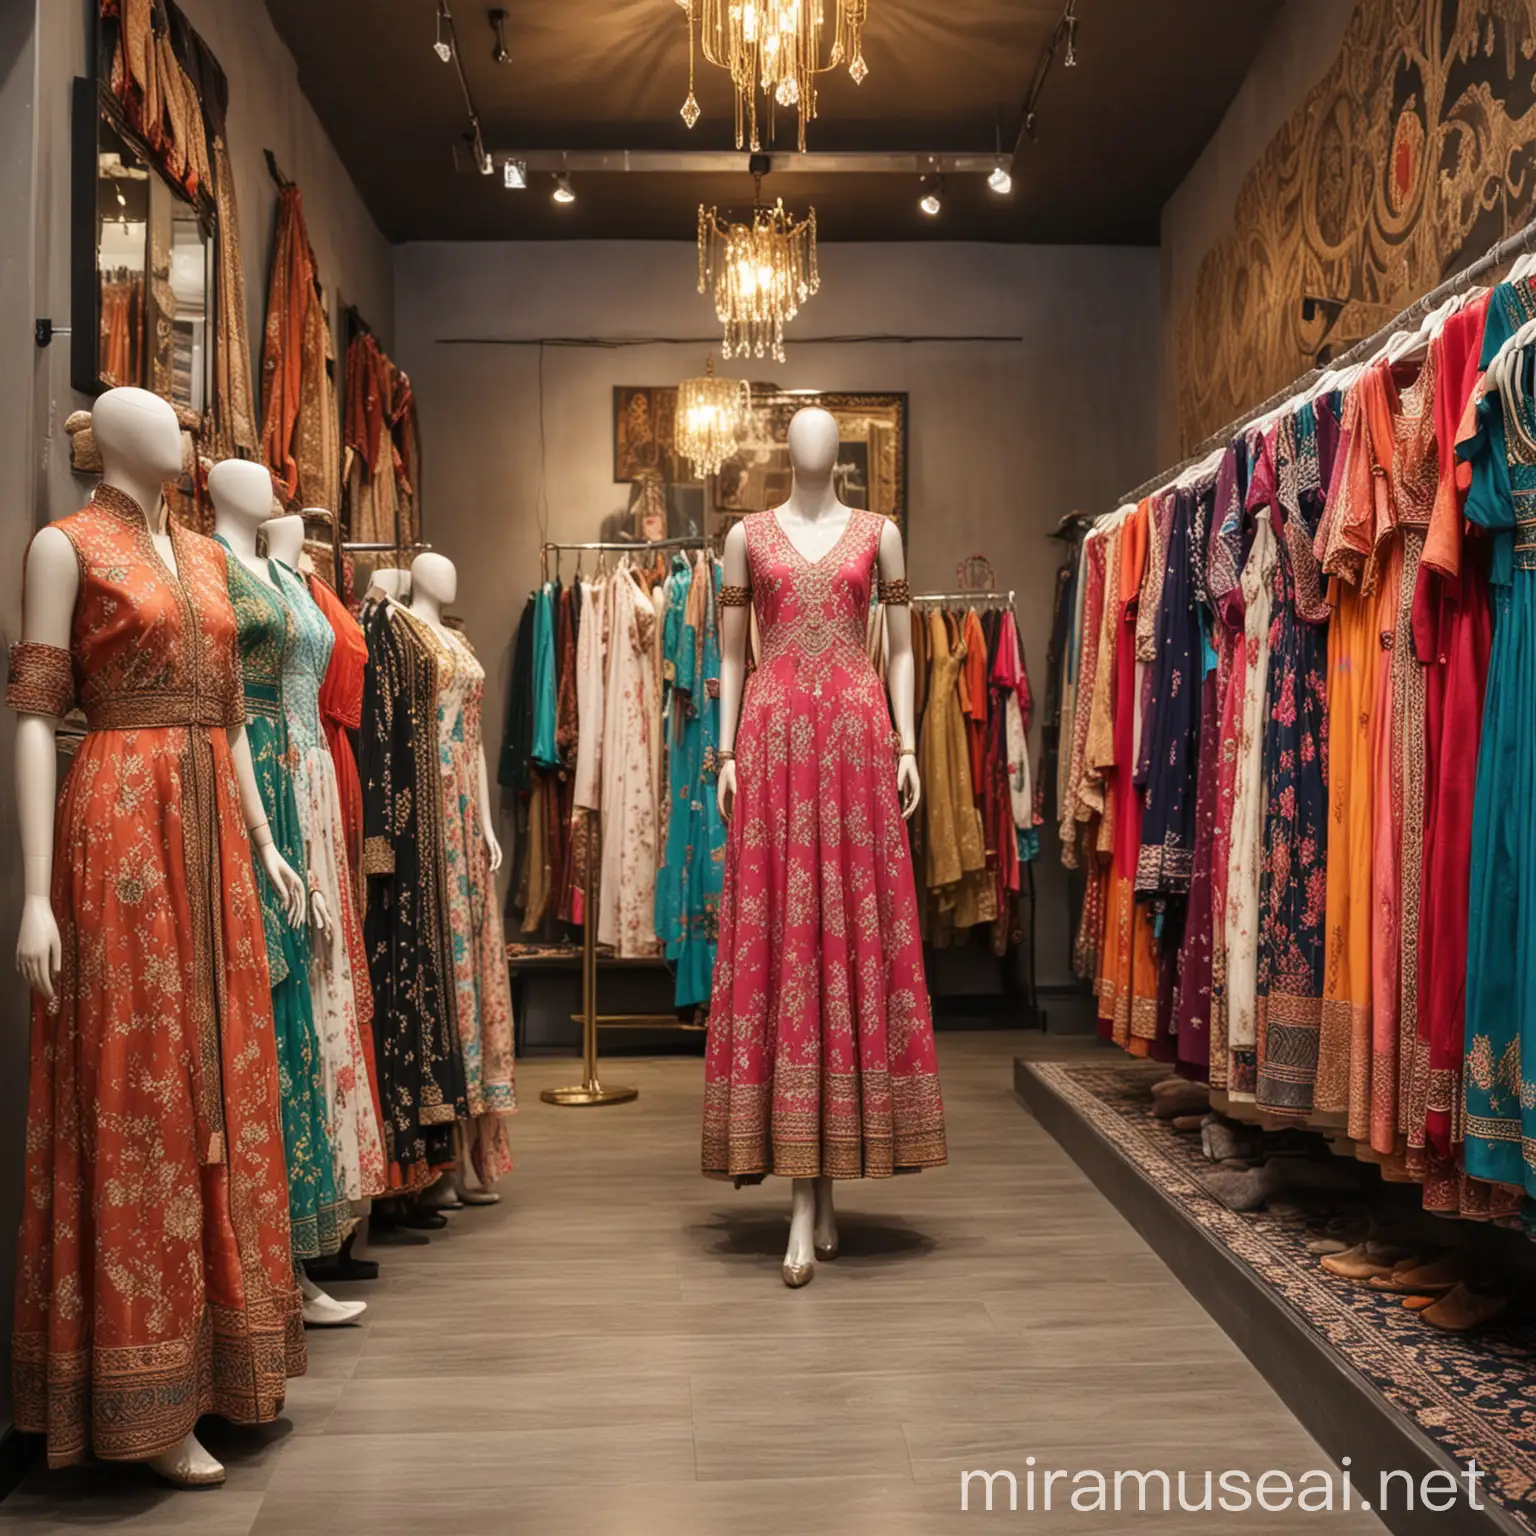 Exquisite Desi Eastern Asian Dresses Adorning Boutique Interior